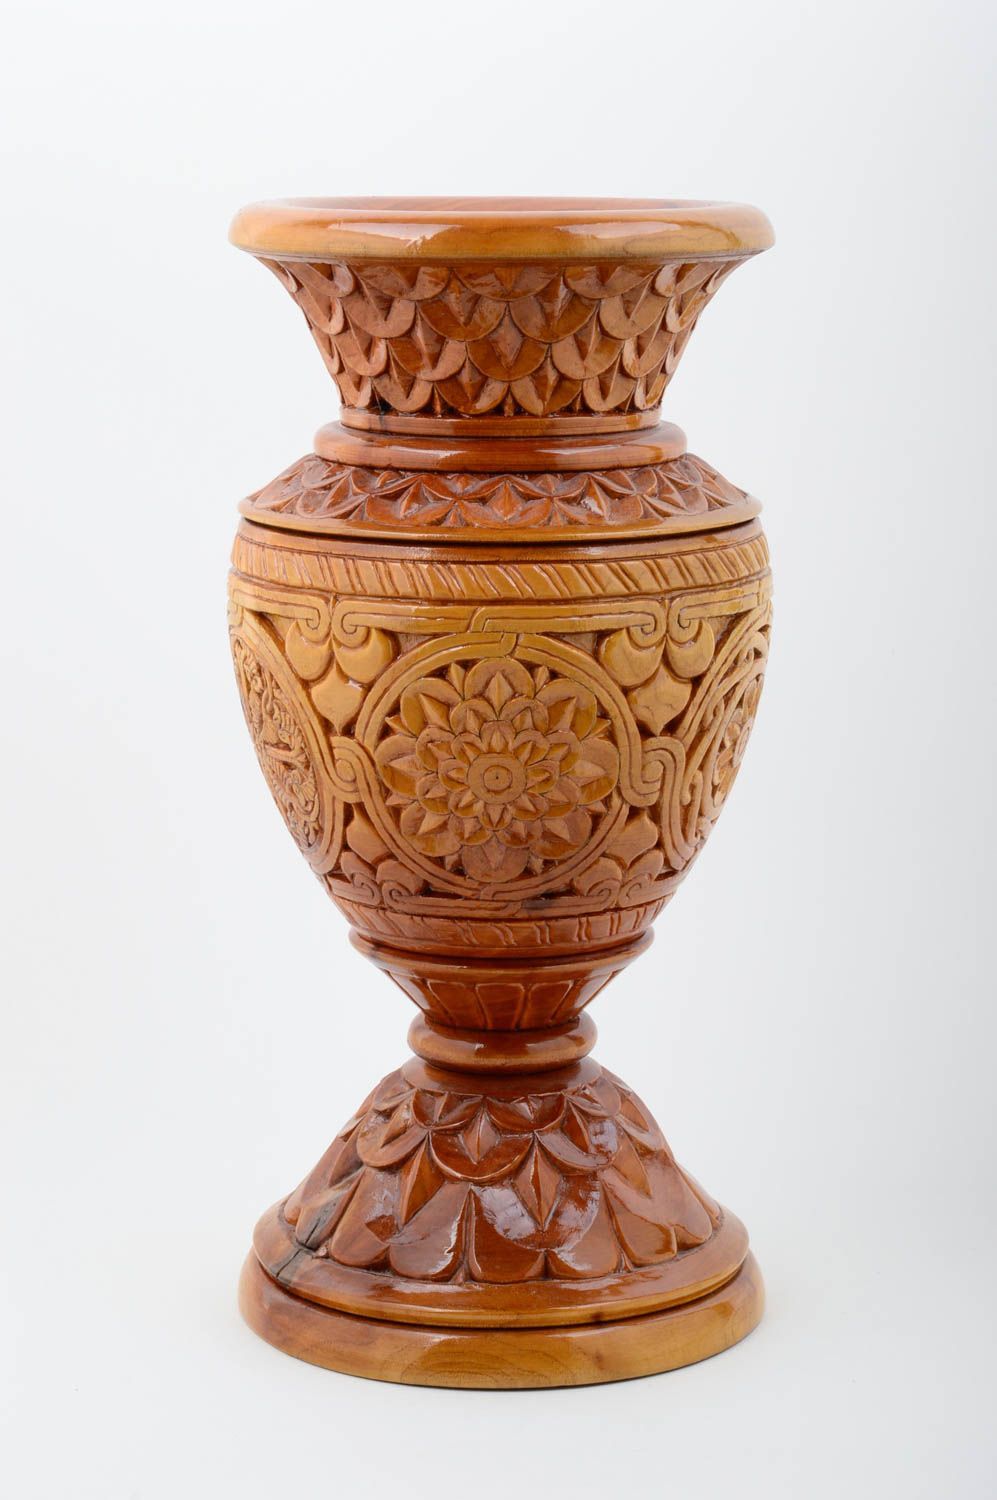 Deko Vase Tisch Deko Handmade Wohnzimmer Deko Holz Vase geschnitzt groß schön foto 1